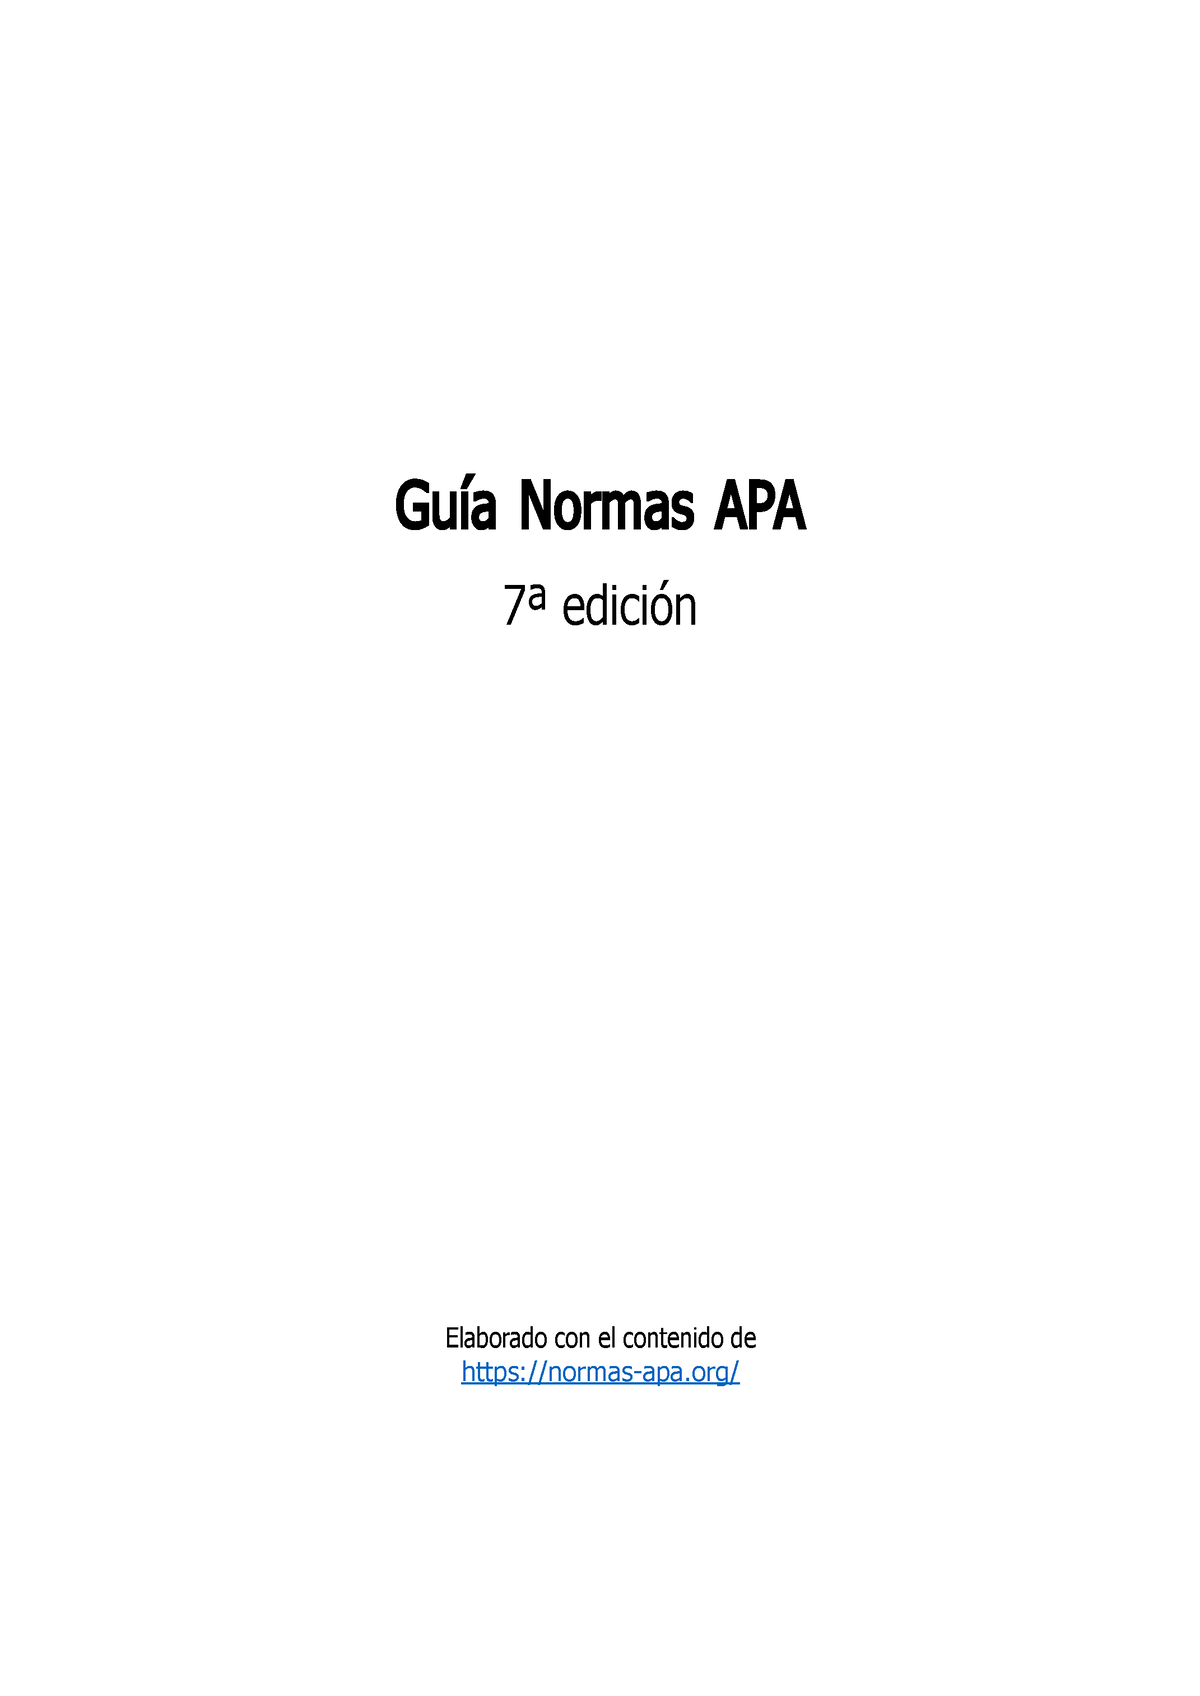 Guia Normas Apa 7ma Caso Guía Normas Apa 7ª Edición Elaborado Con El Contenido De Normas Apa 6677